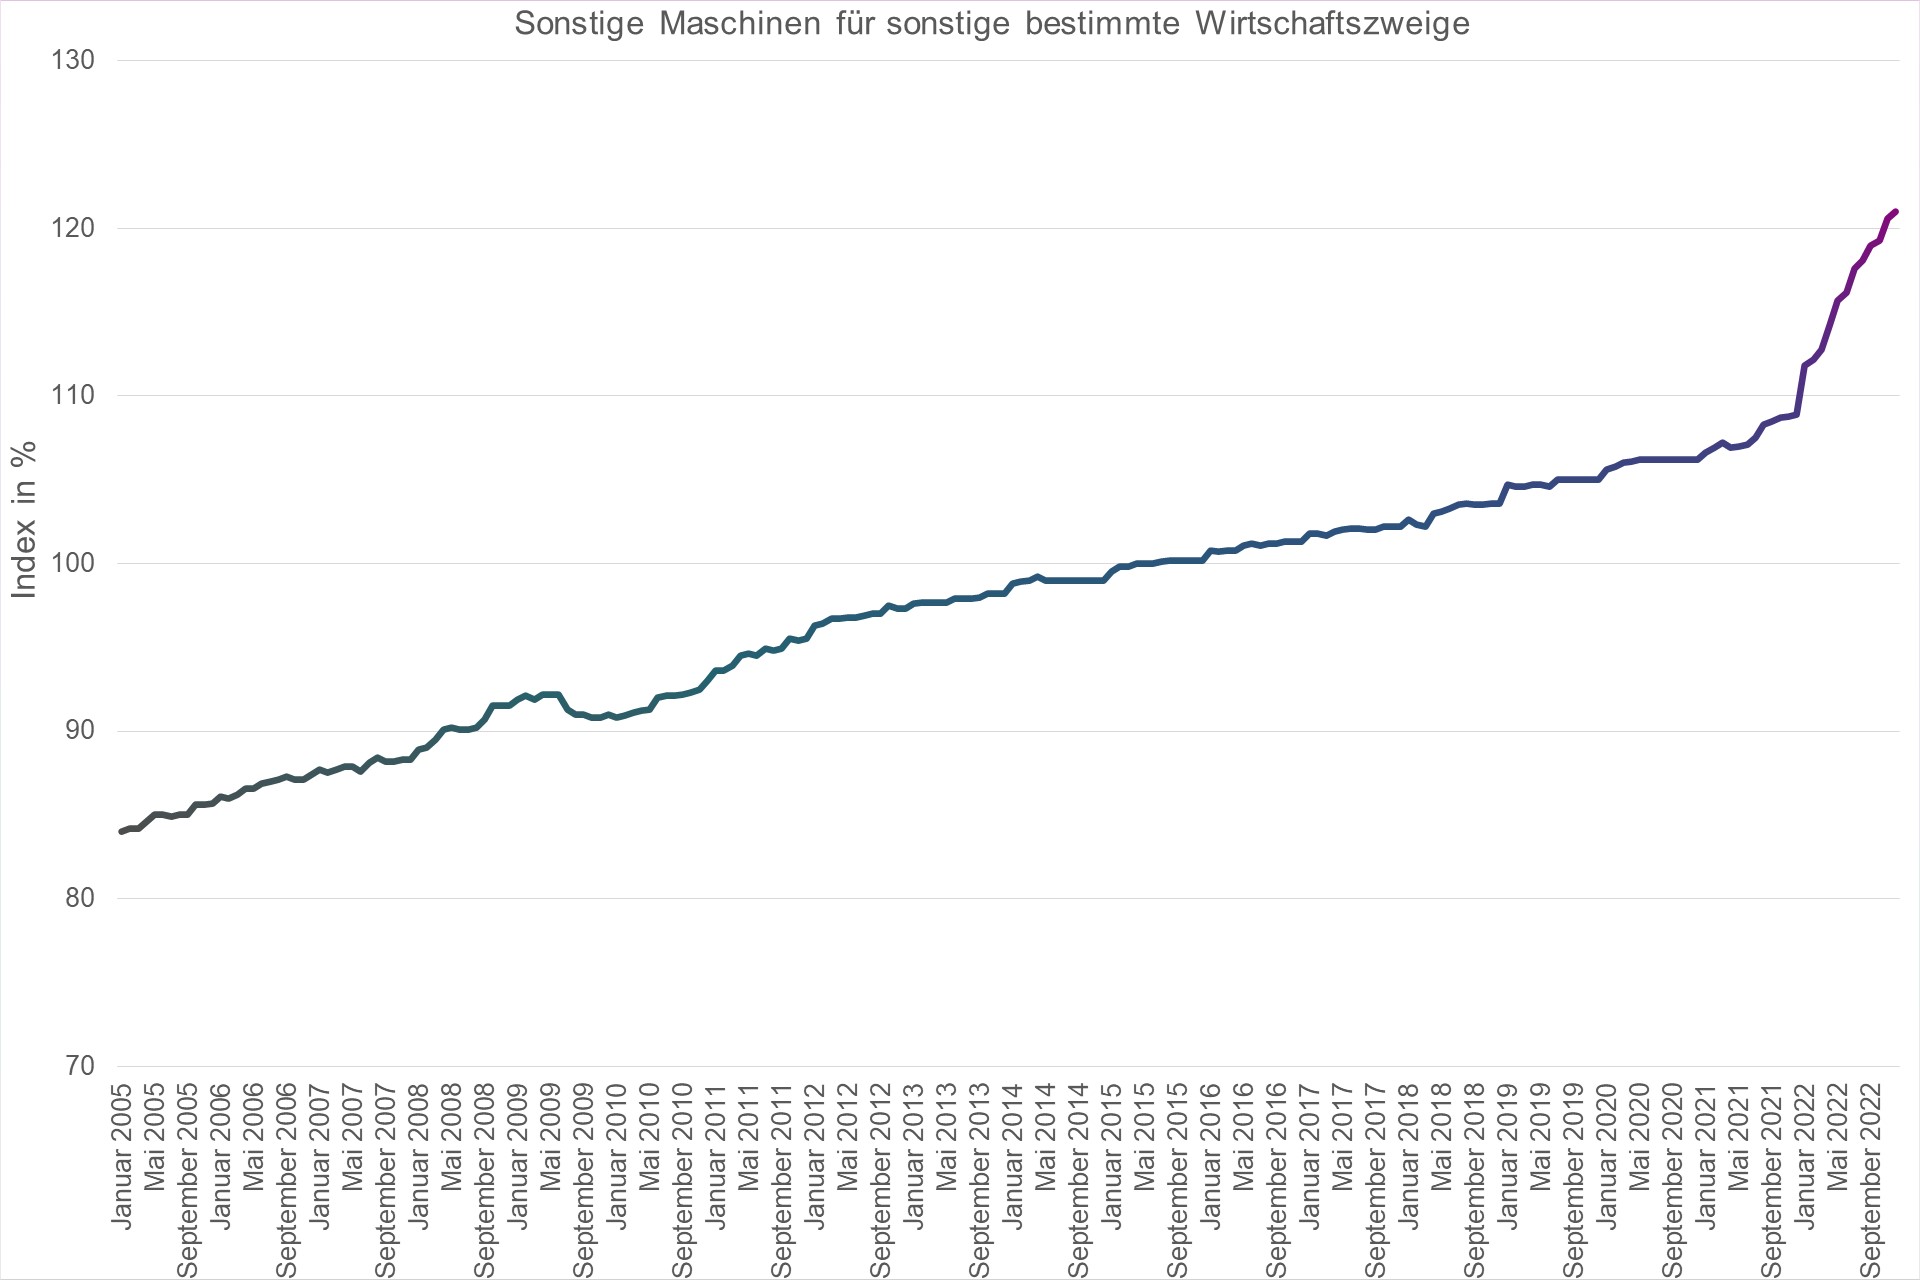 Grafik Preisindex Sonstige Maschinen für sonstige bestimmte Wirtschaftszweige